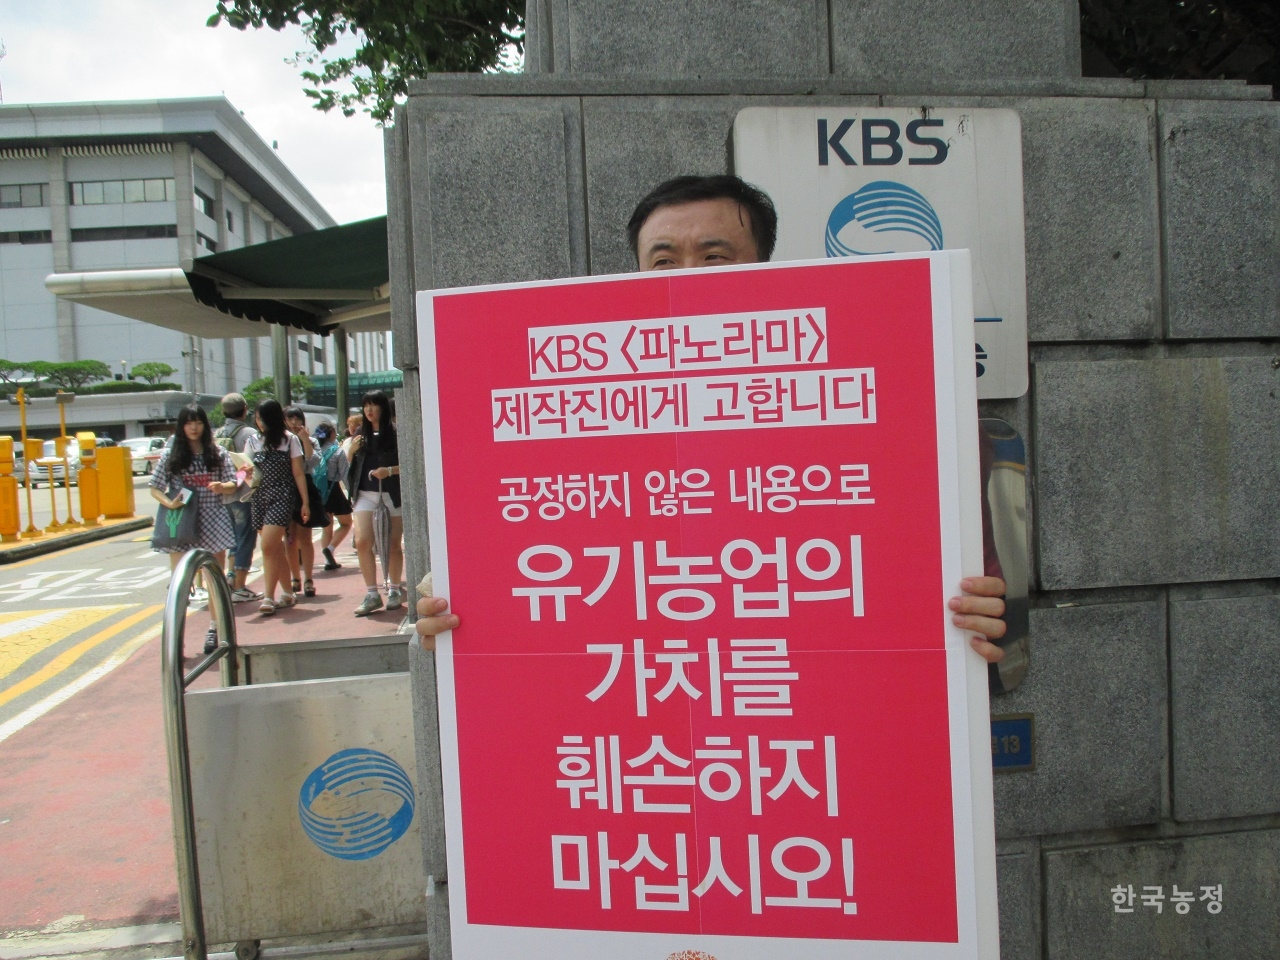 2014년 7월 25일 친환경농업계는 KBS의 ‘KBS 파노라마-친환경 유기농의 진실' 방송에 유기농의 가치를 폄하하는 내용이 담긴 데 대해 항의행동을 진행했다. 한 참가자가 KBS 앞에서 1인시위를 벌이고 있다. 전국친환경농업인연합회 제공